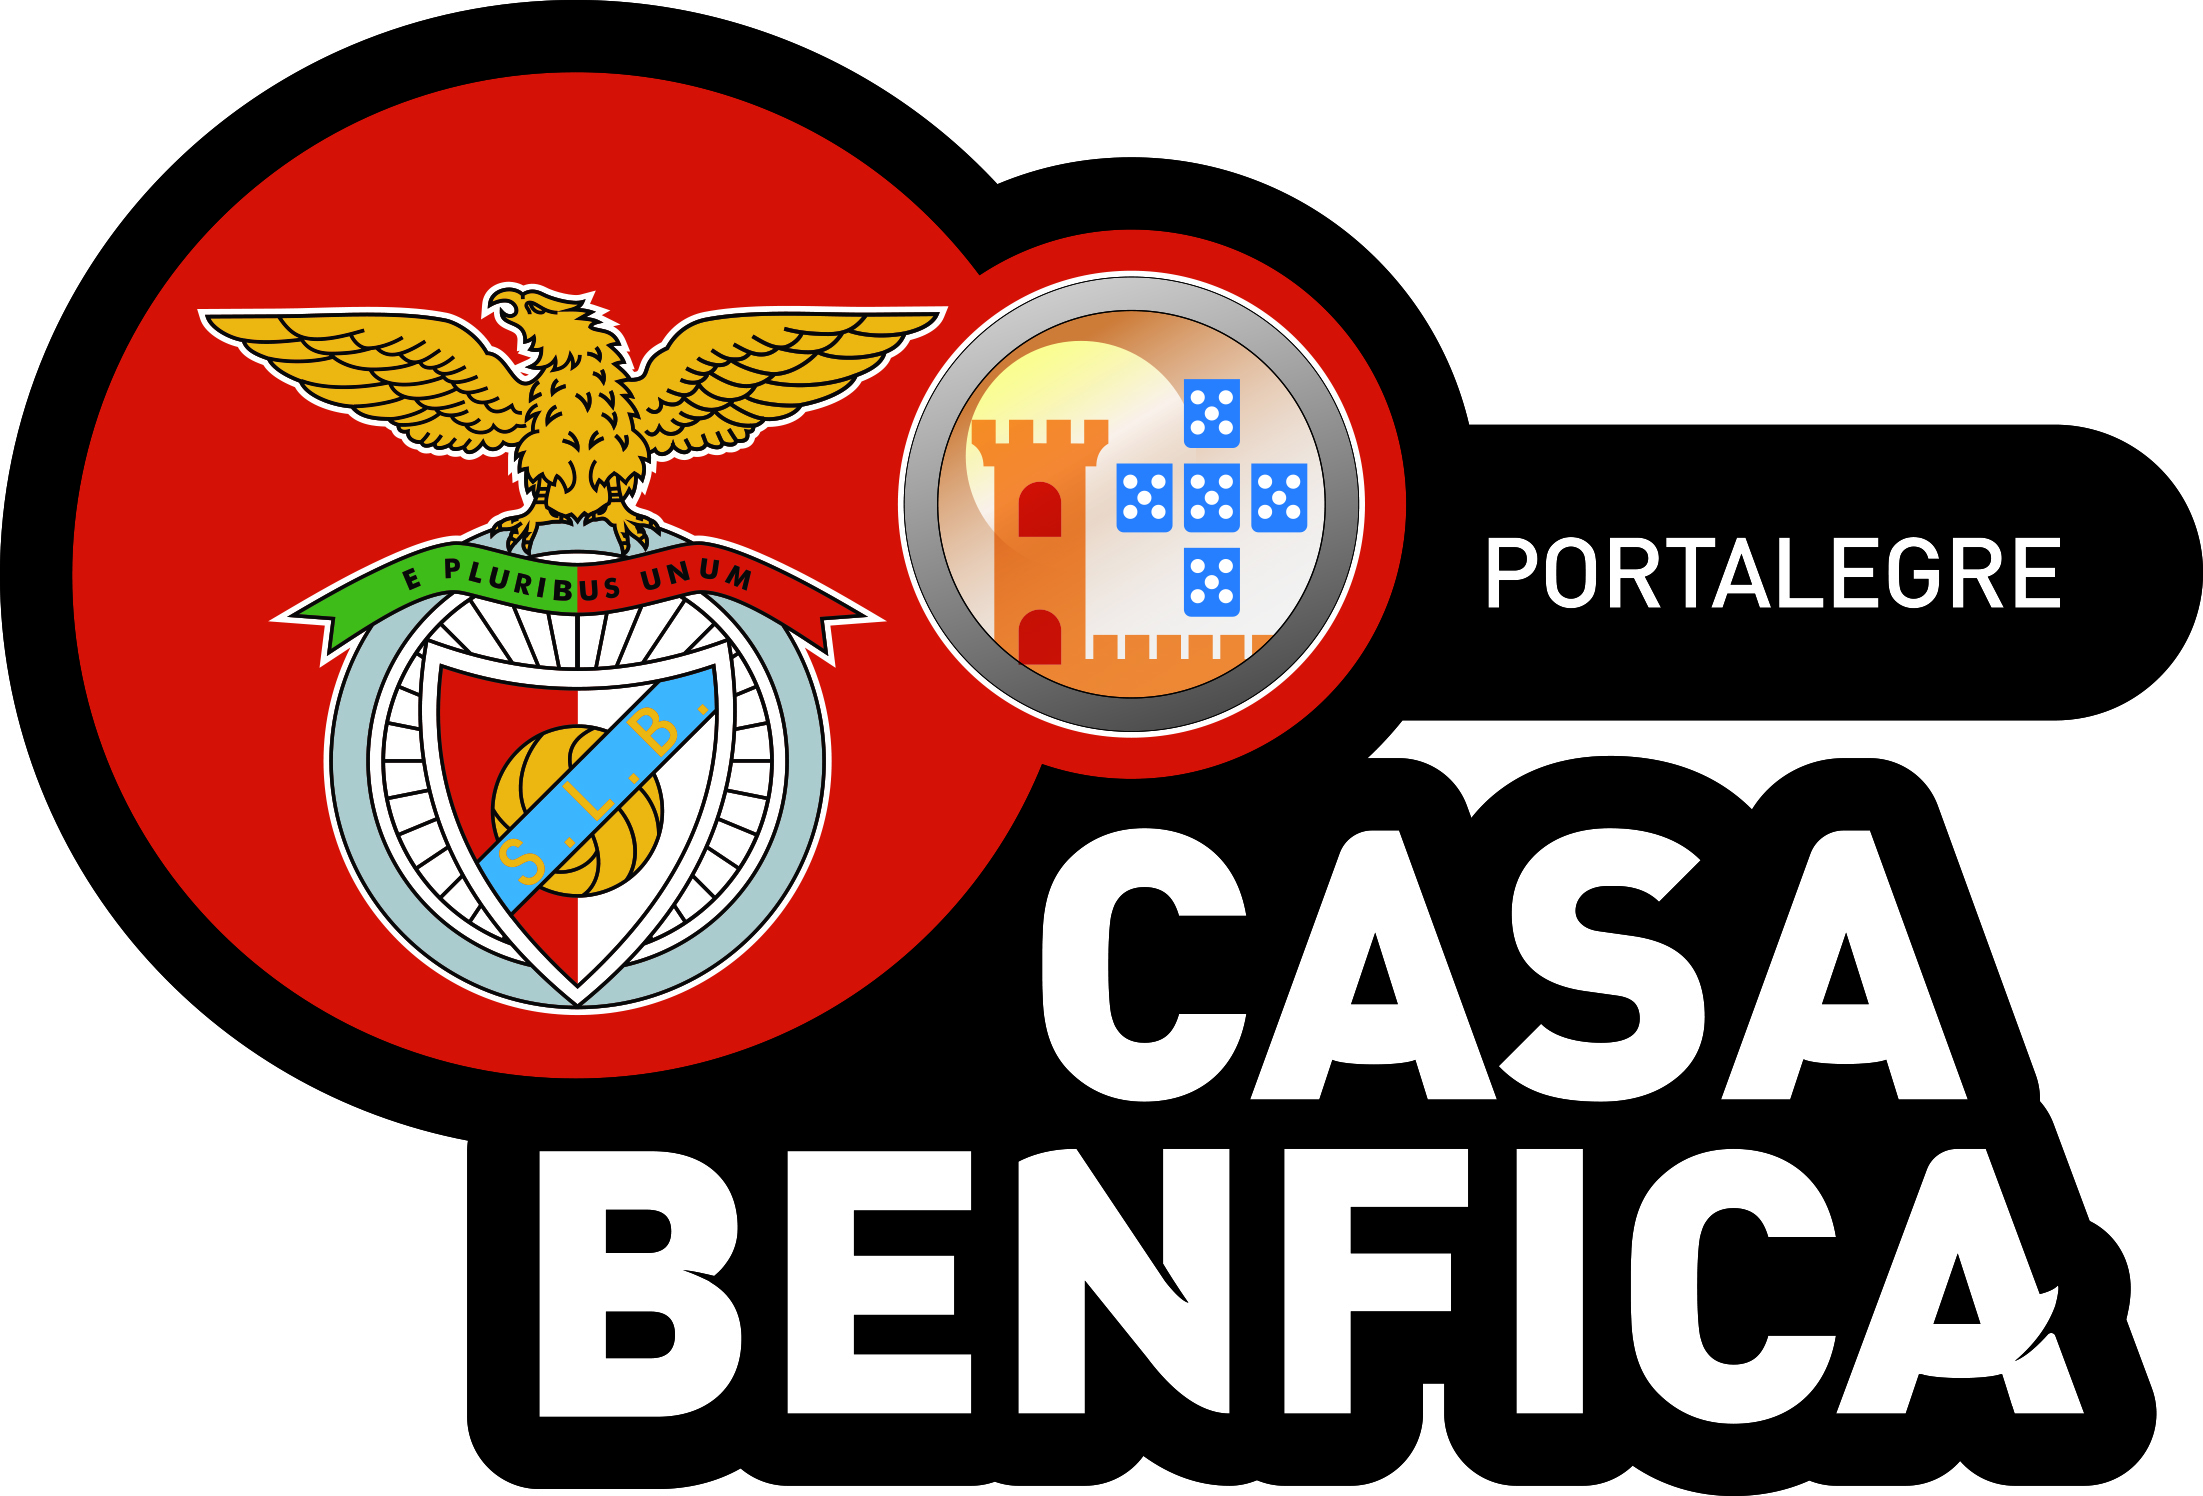 Casa Benfica Portalegre